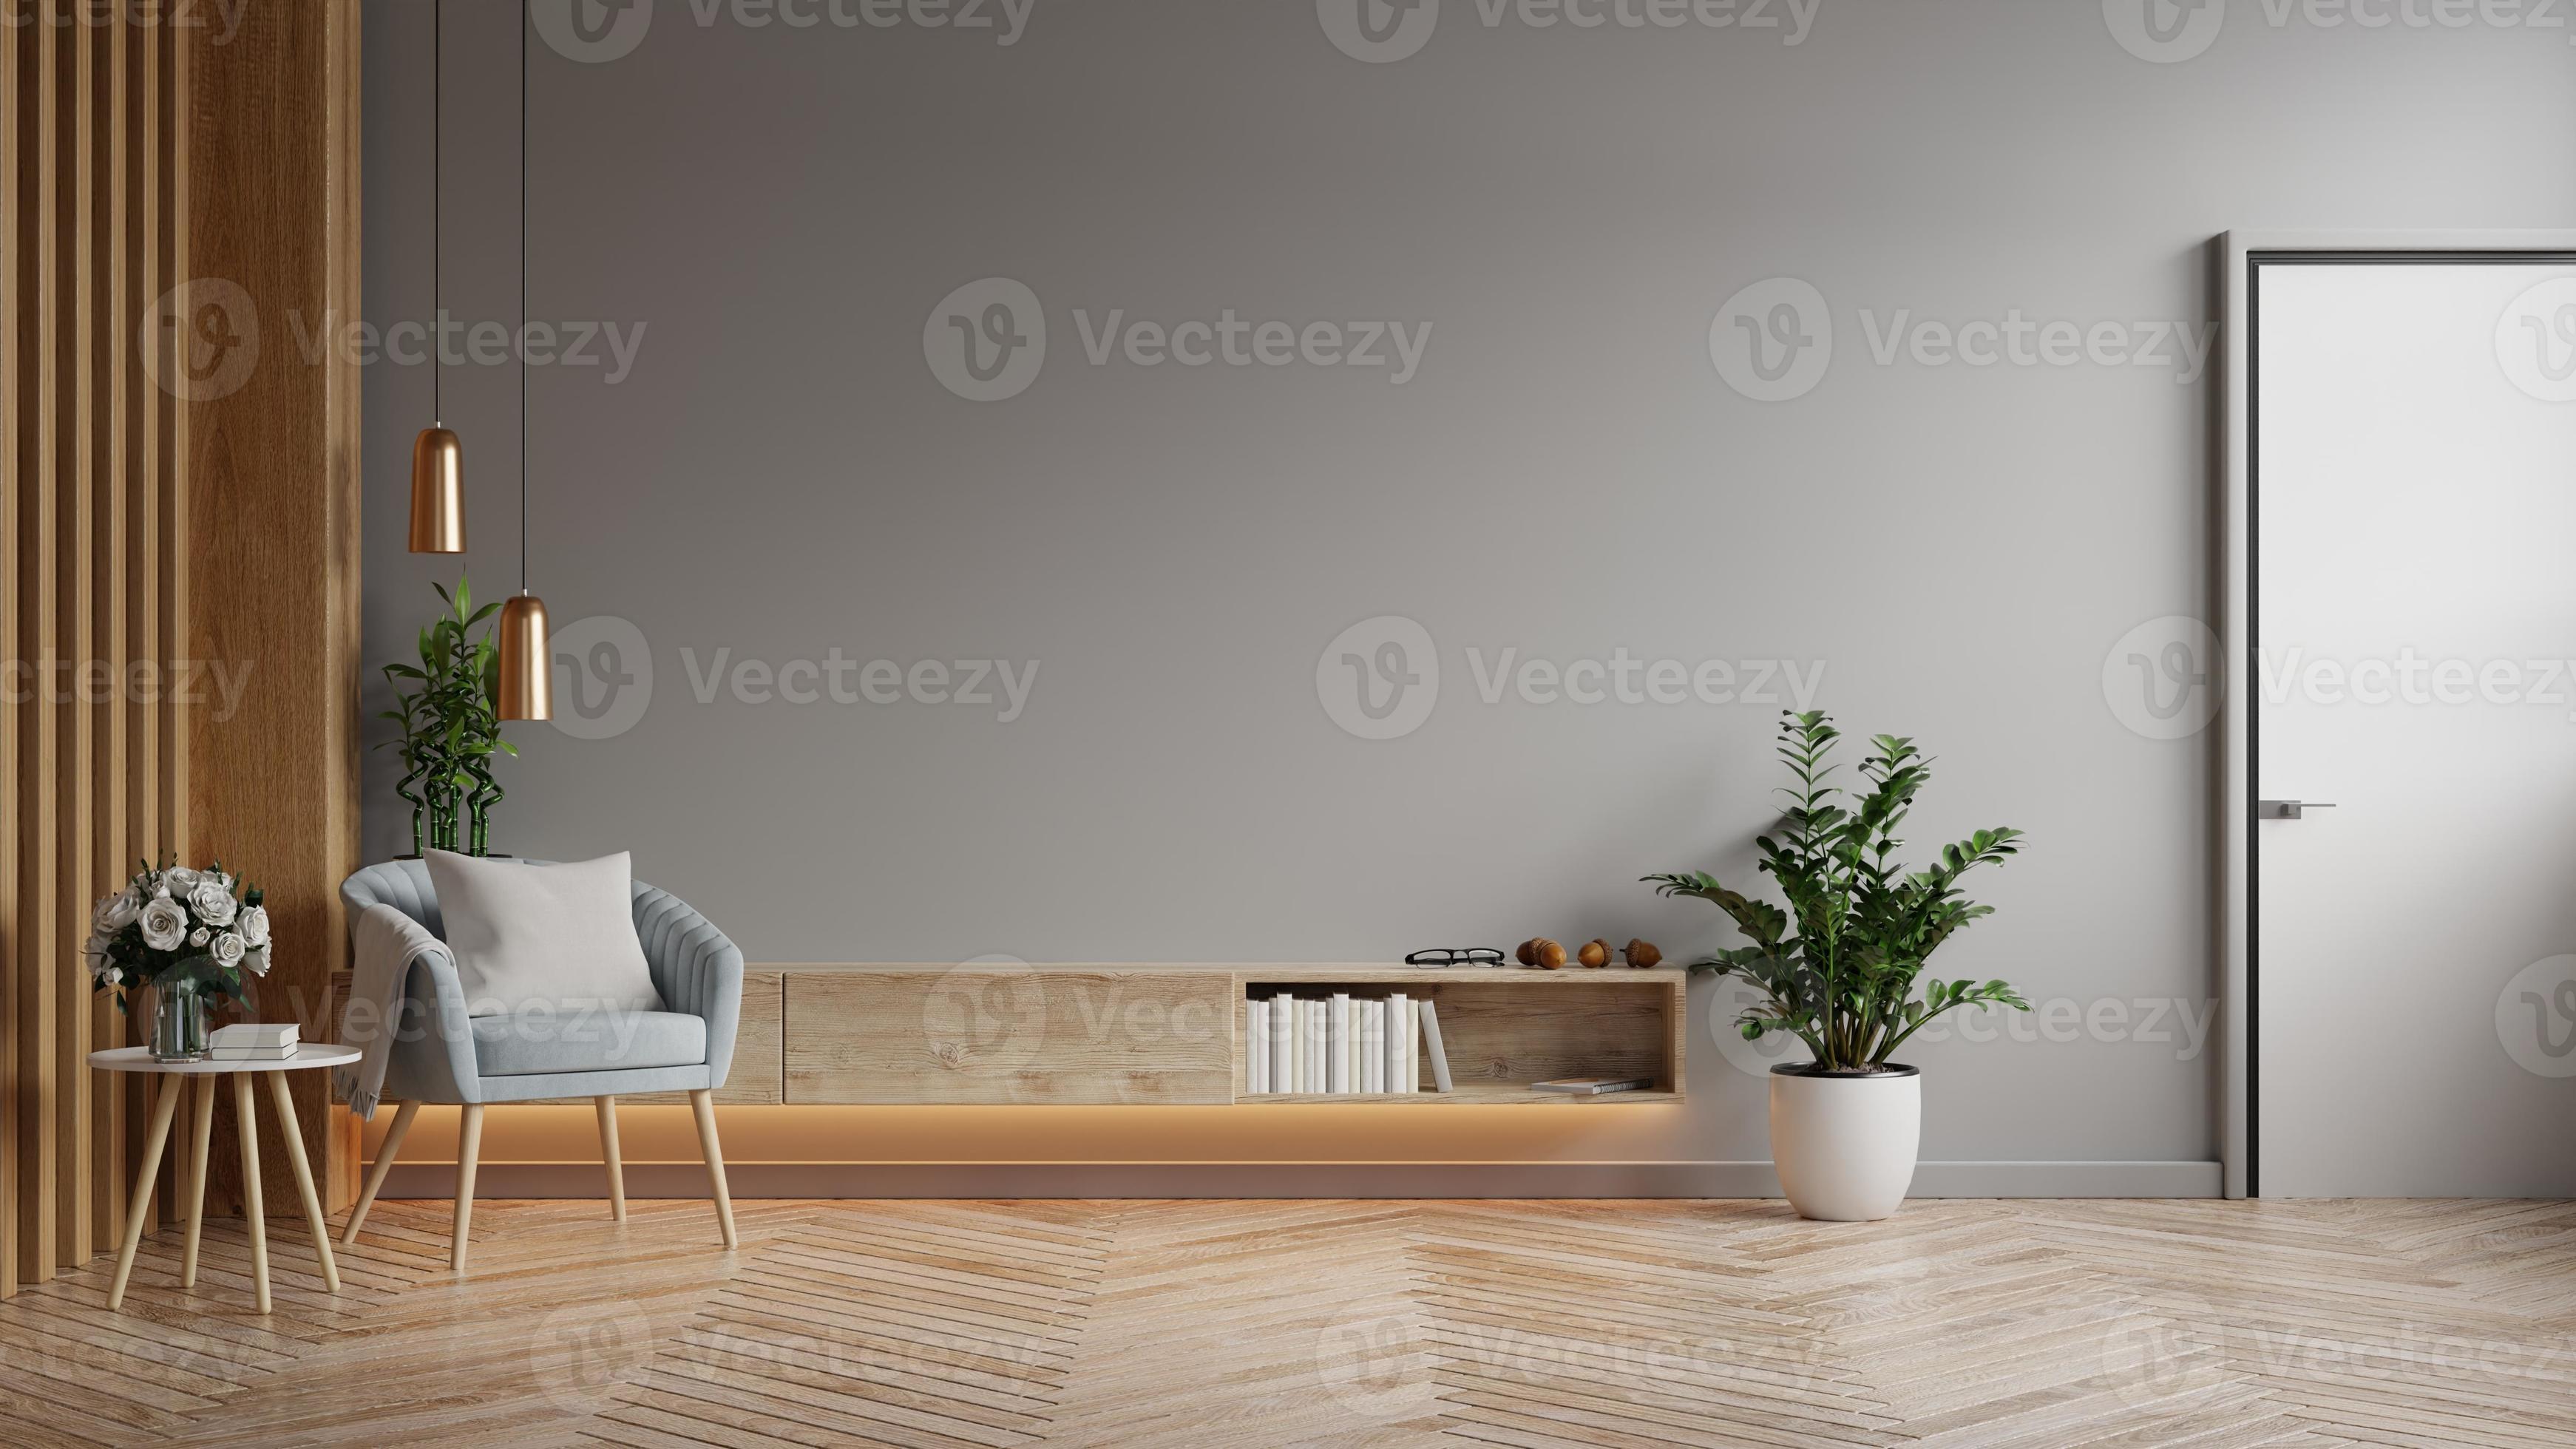 mockup kast in moderne woonkamer met blauwe fauteuil en plant op donkergrijze muur achtergrond. 6991288 bij Vecteezy